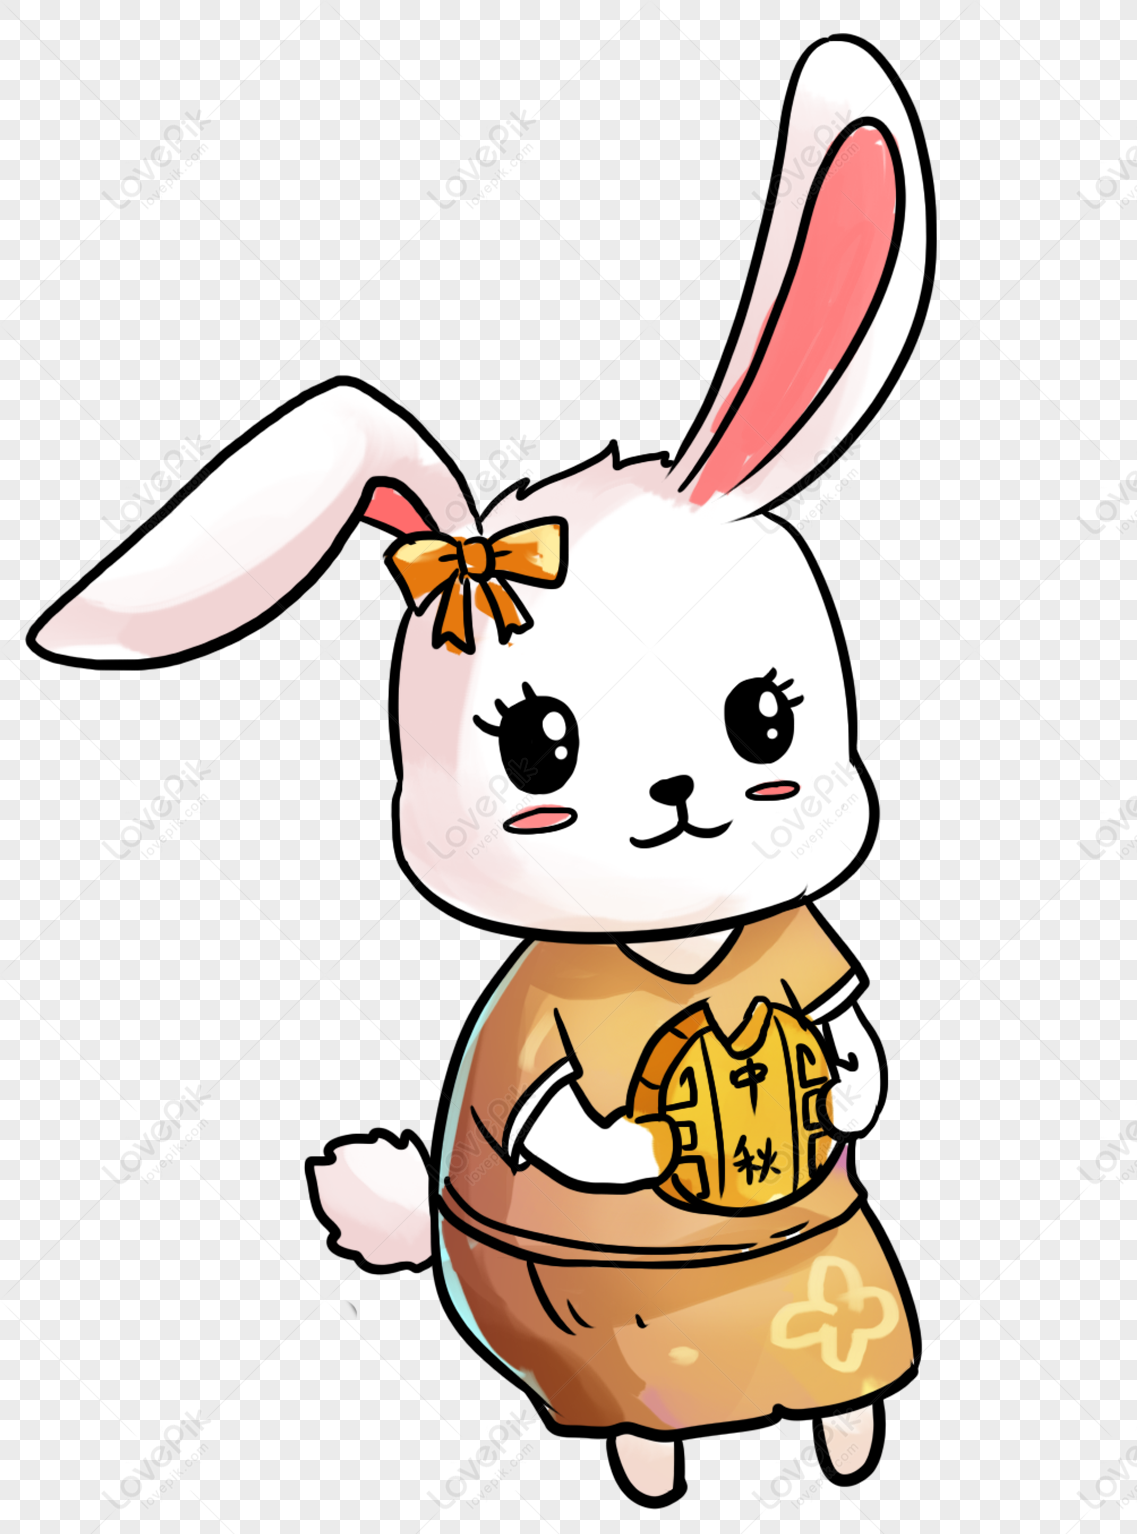 Nếu bạn đang tìm kiếm hình ảnh thỏ đáng yêu và miễn phí để tải xuống, thì chúng tôi có sẵn bộ sưu tập thỏ ngọc PNG miễn phí cho bạn. Với độ phân giải cao, các hình ảnh này sẽ làm tăng sắc nét cho mọi dự án của bạn.